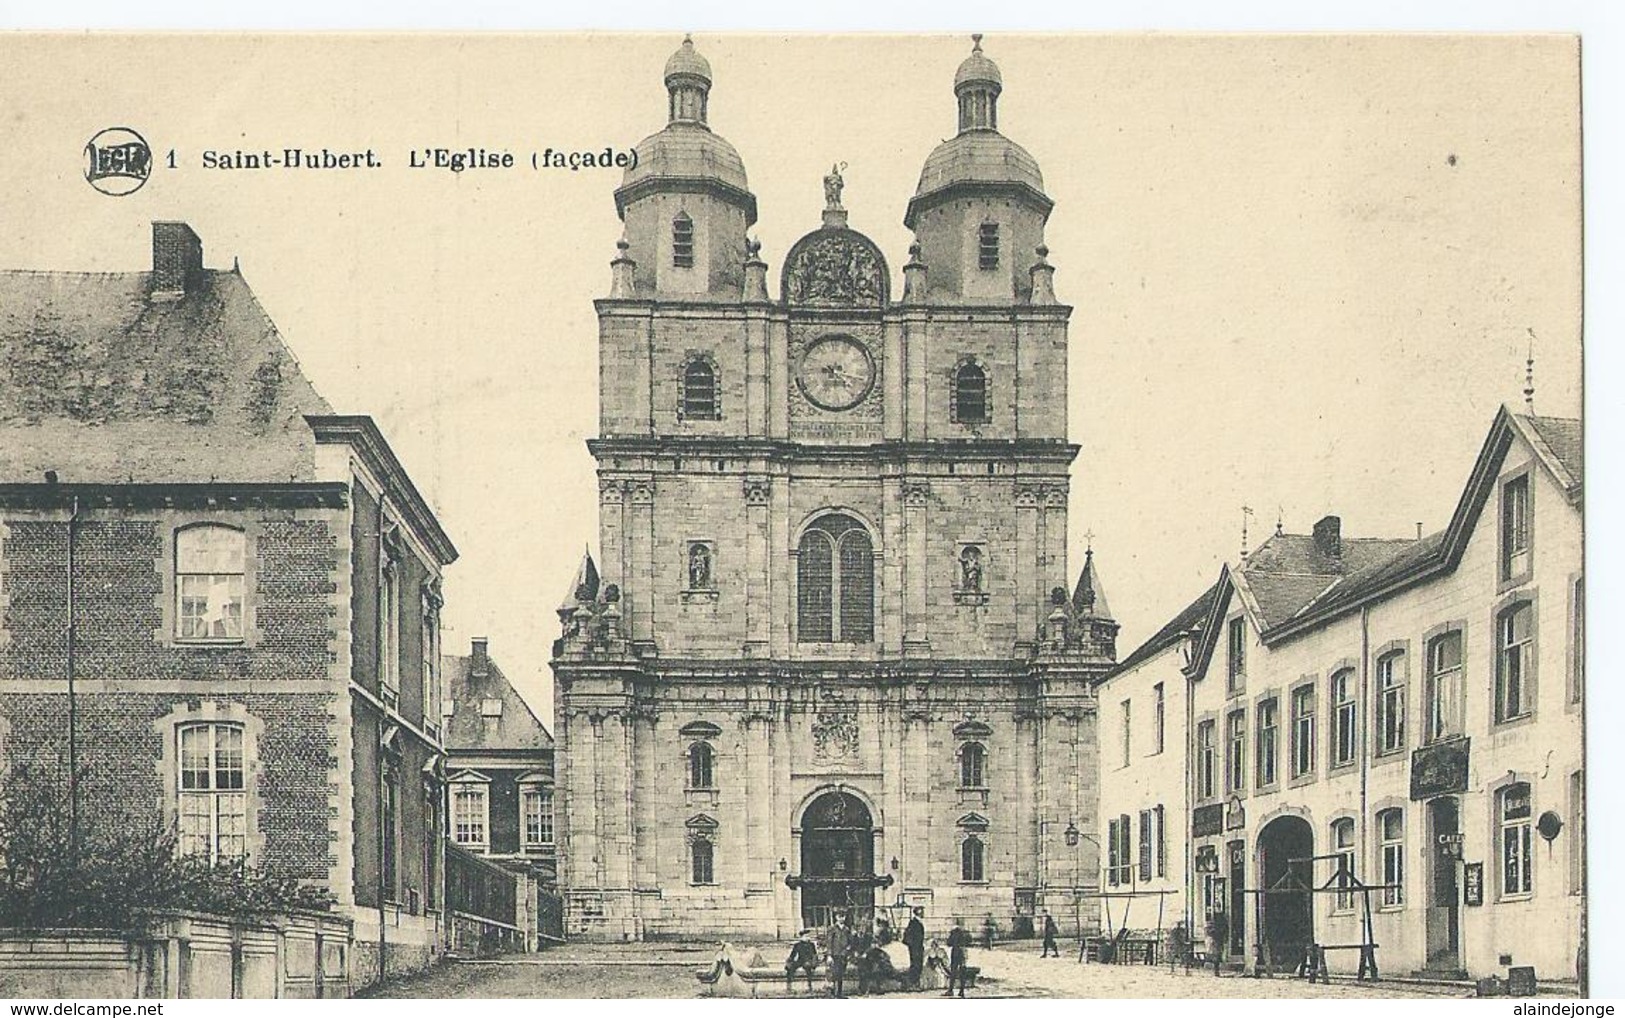 Saint-Hubert - L'Eglise (facade) - Legia No 1 - Saint-Hubert